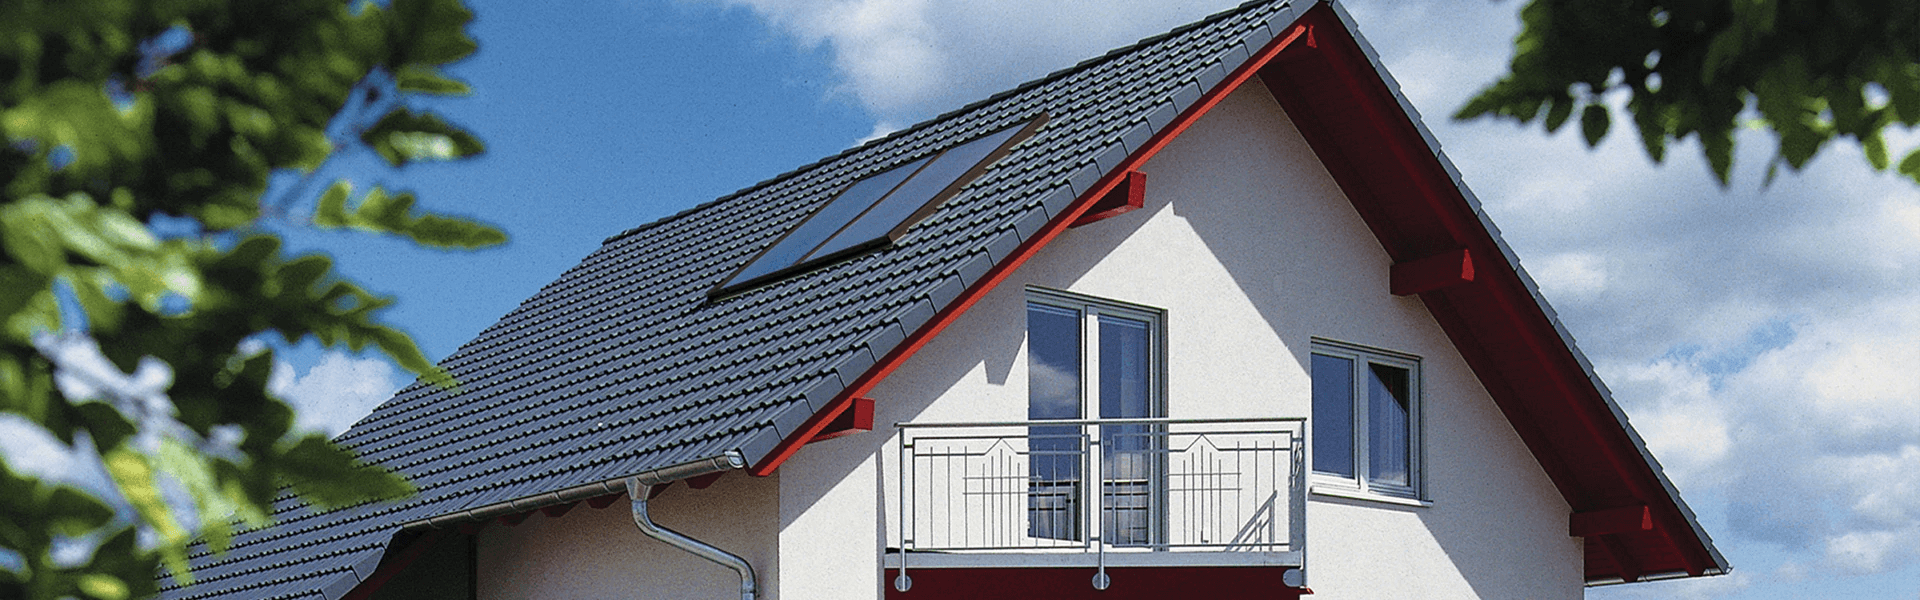 Pannelli solari termici: l’energia pulita del sole per la tua casa